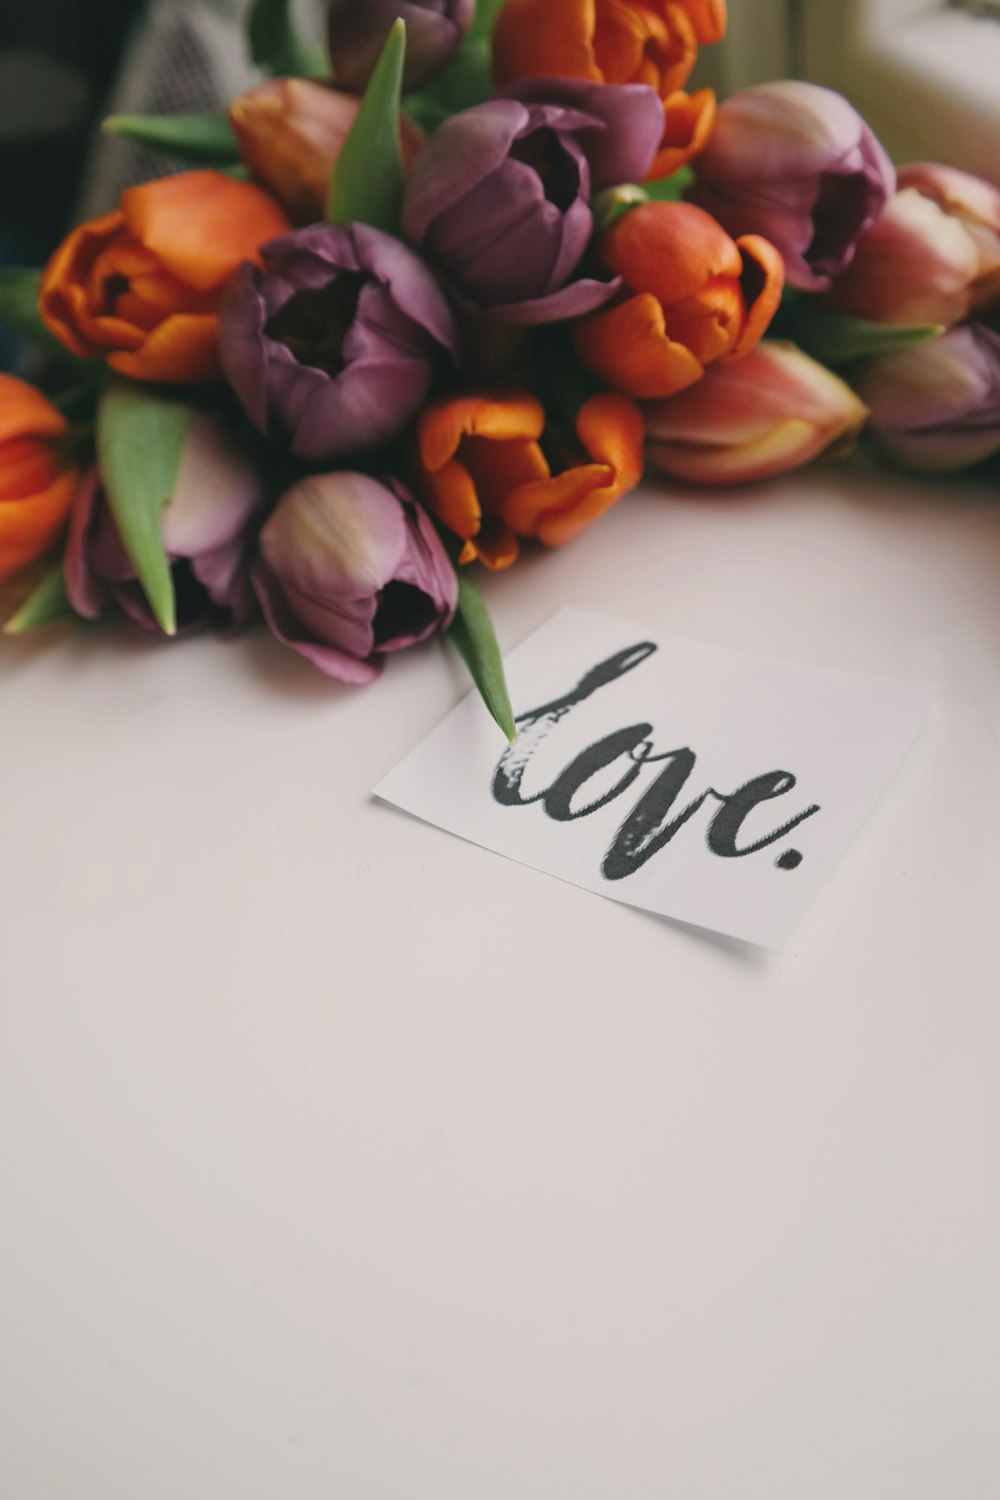 チューリップの花束、筆記体で「愛」と書かれた紙片の隣